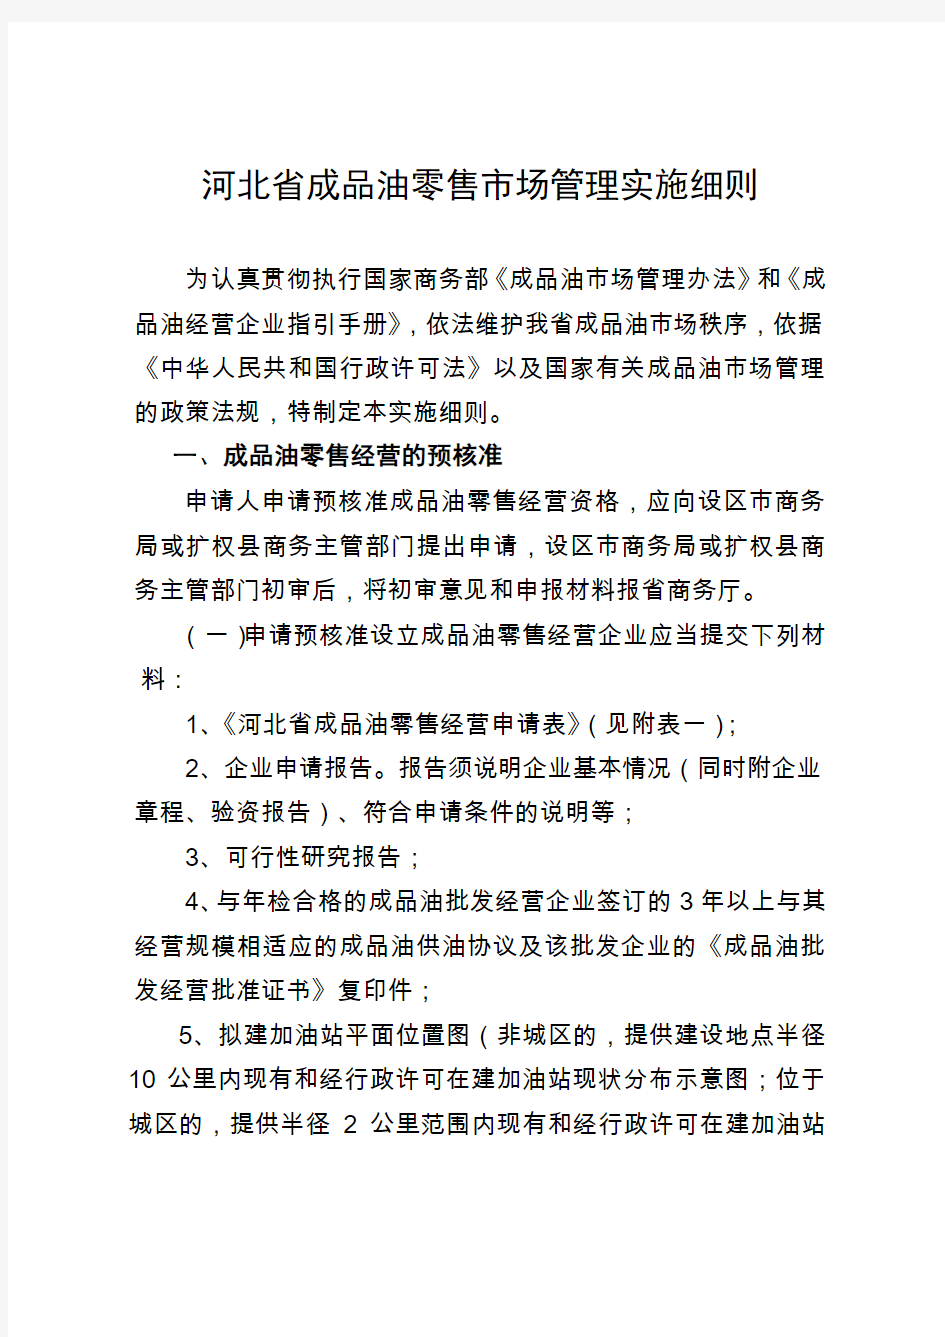 河北省成品油零售市场管理实施细则(附件)